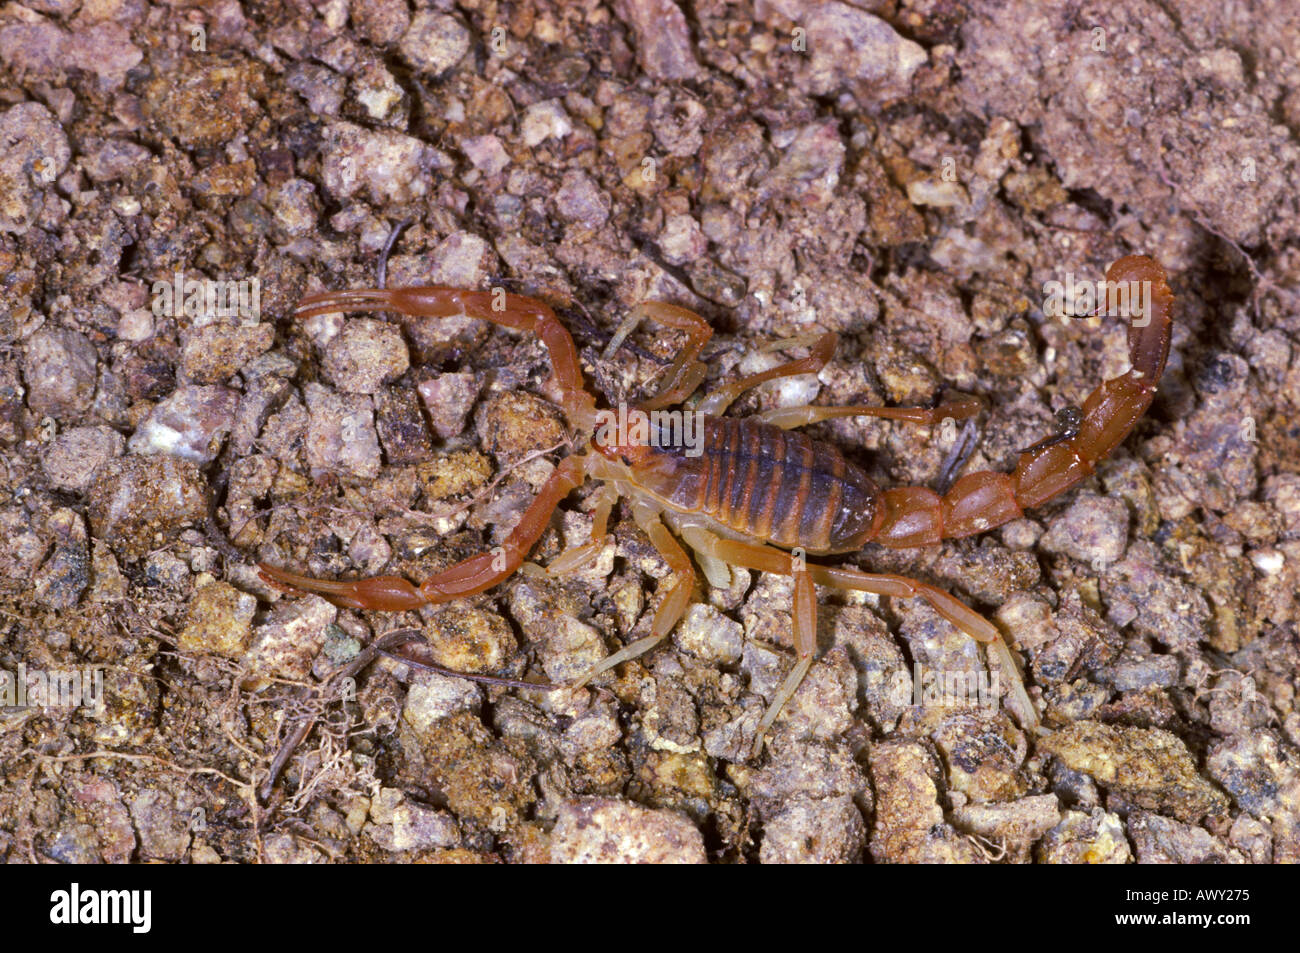 Scorpion, Buthus occitanus Stock Photo